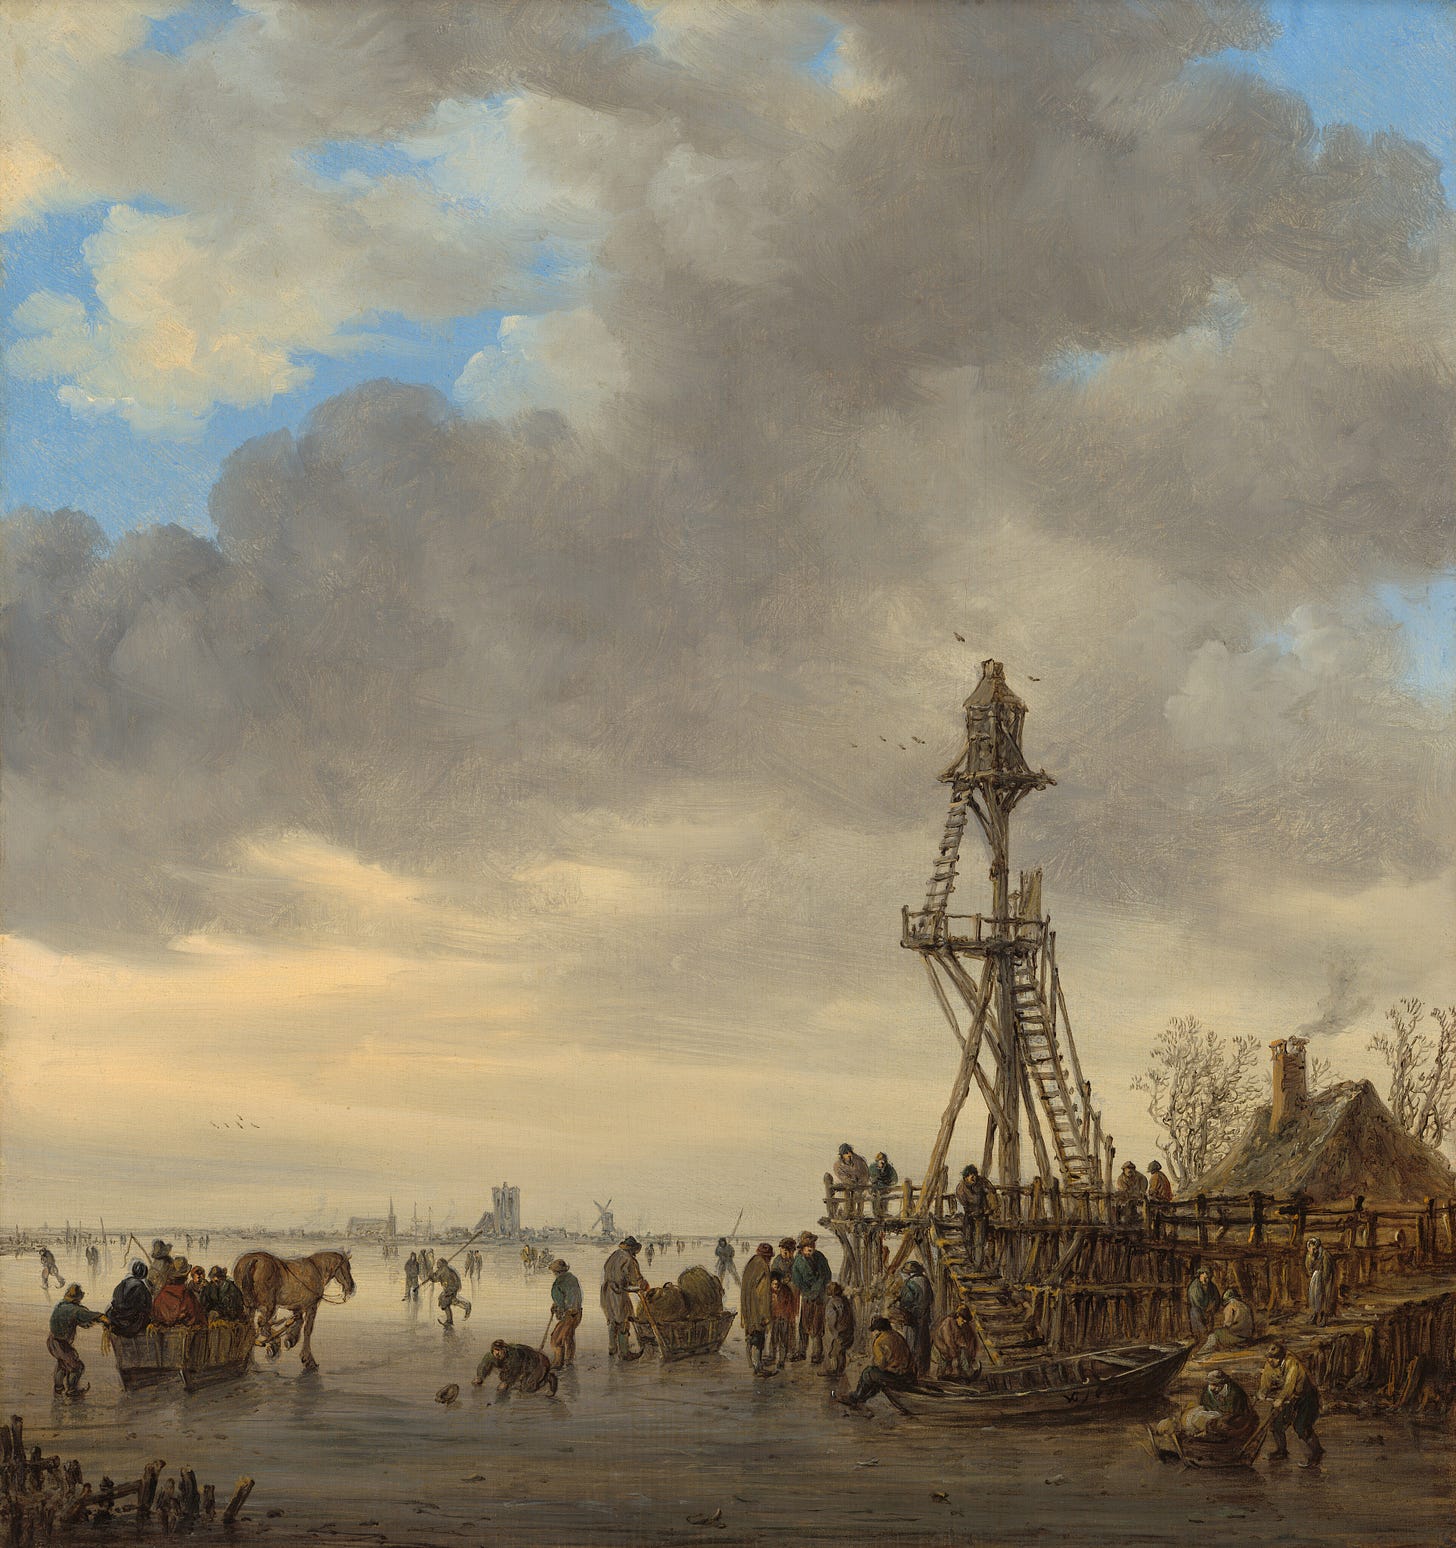 Ice Scene near a Wooden Observation Tower, 1646 by Jan van Goyen